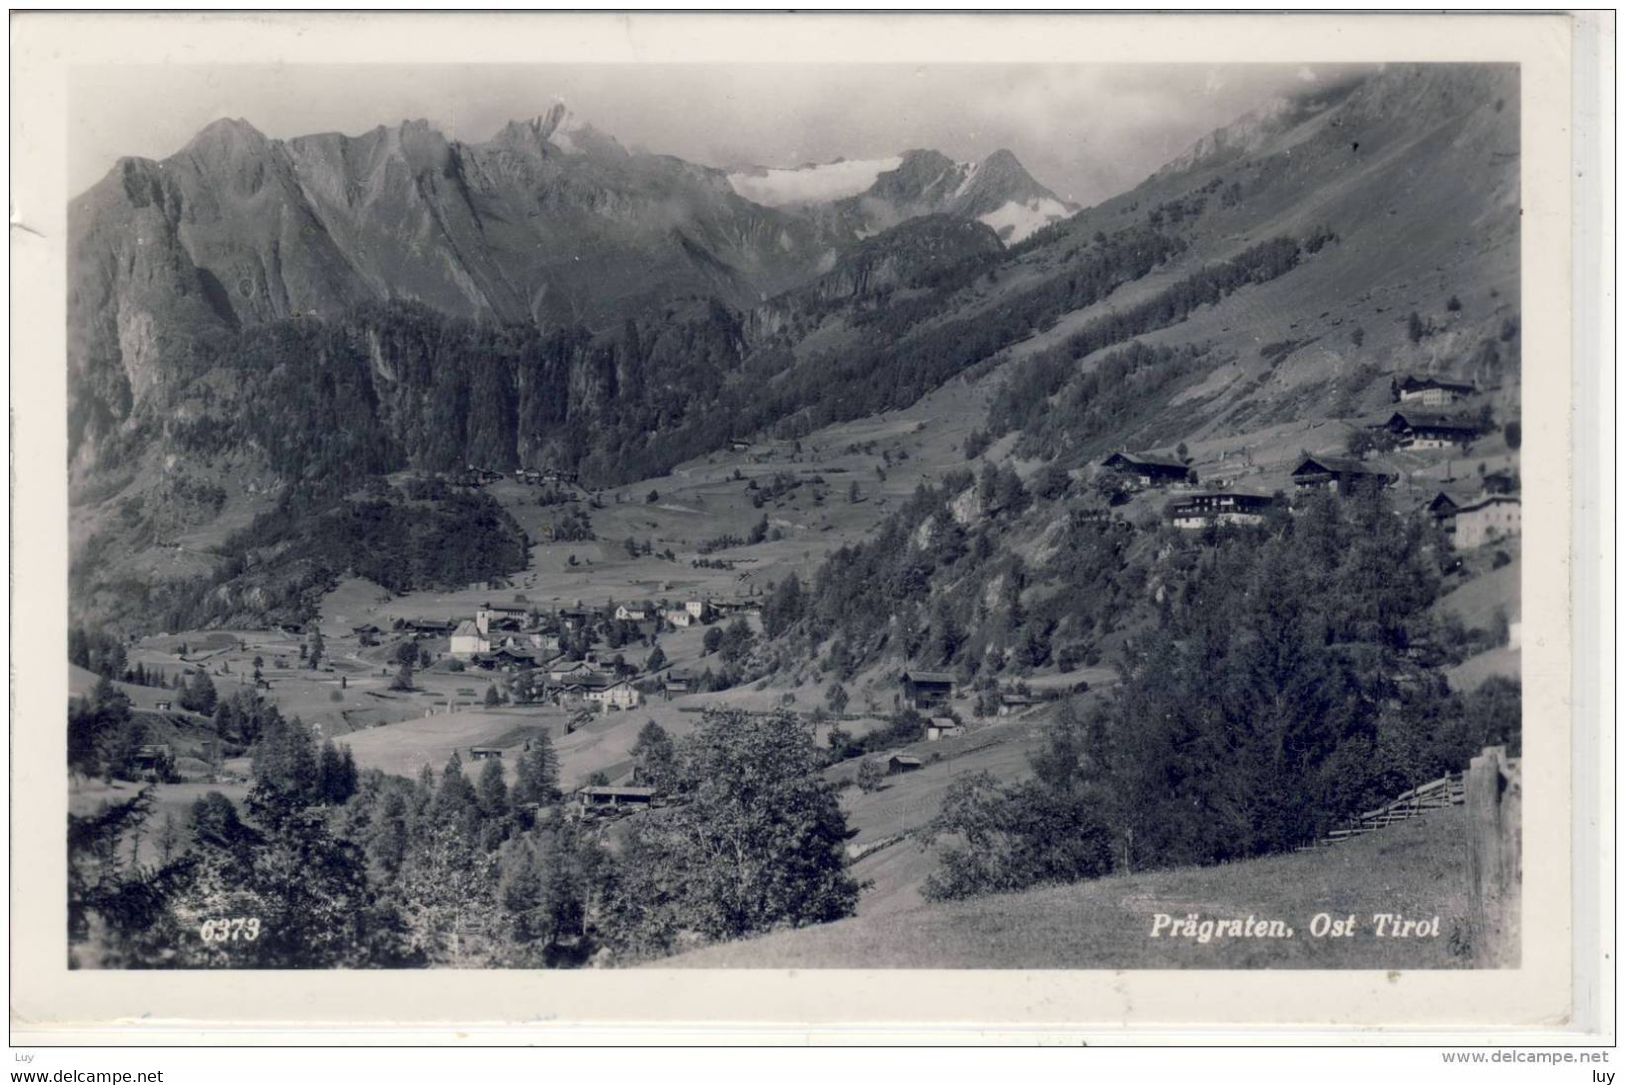 PRÄGRATEN - Ost Tirol, Panorama, 1957 - Prägraten